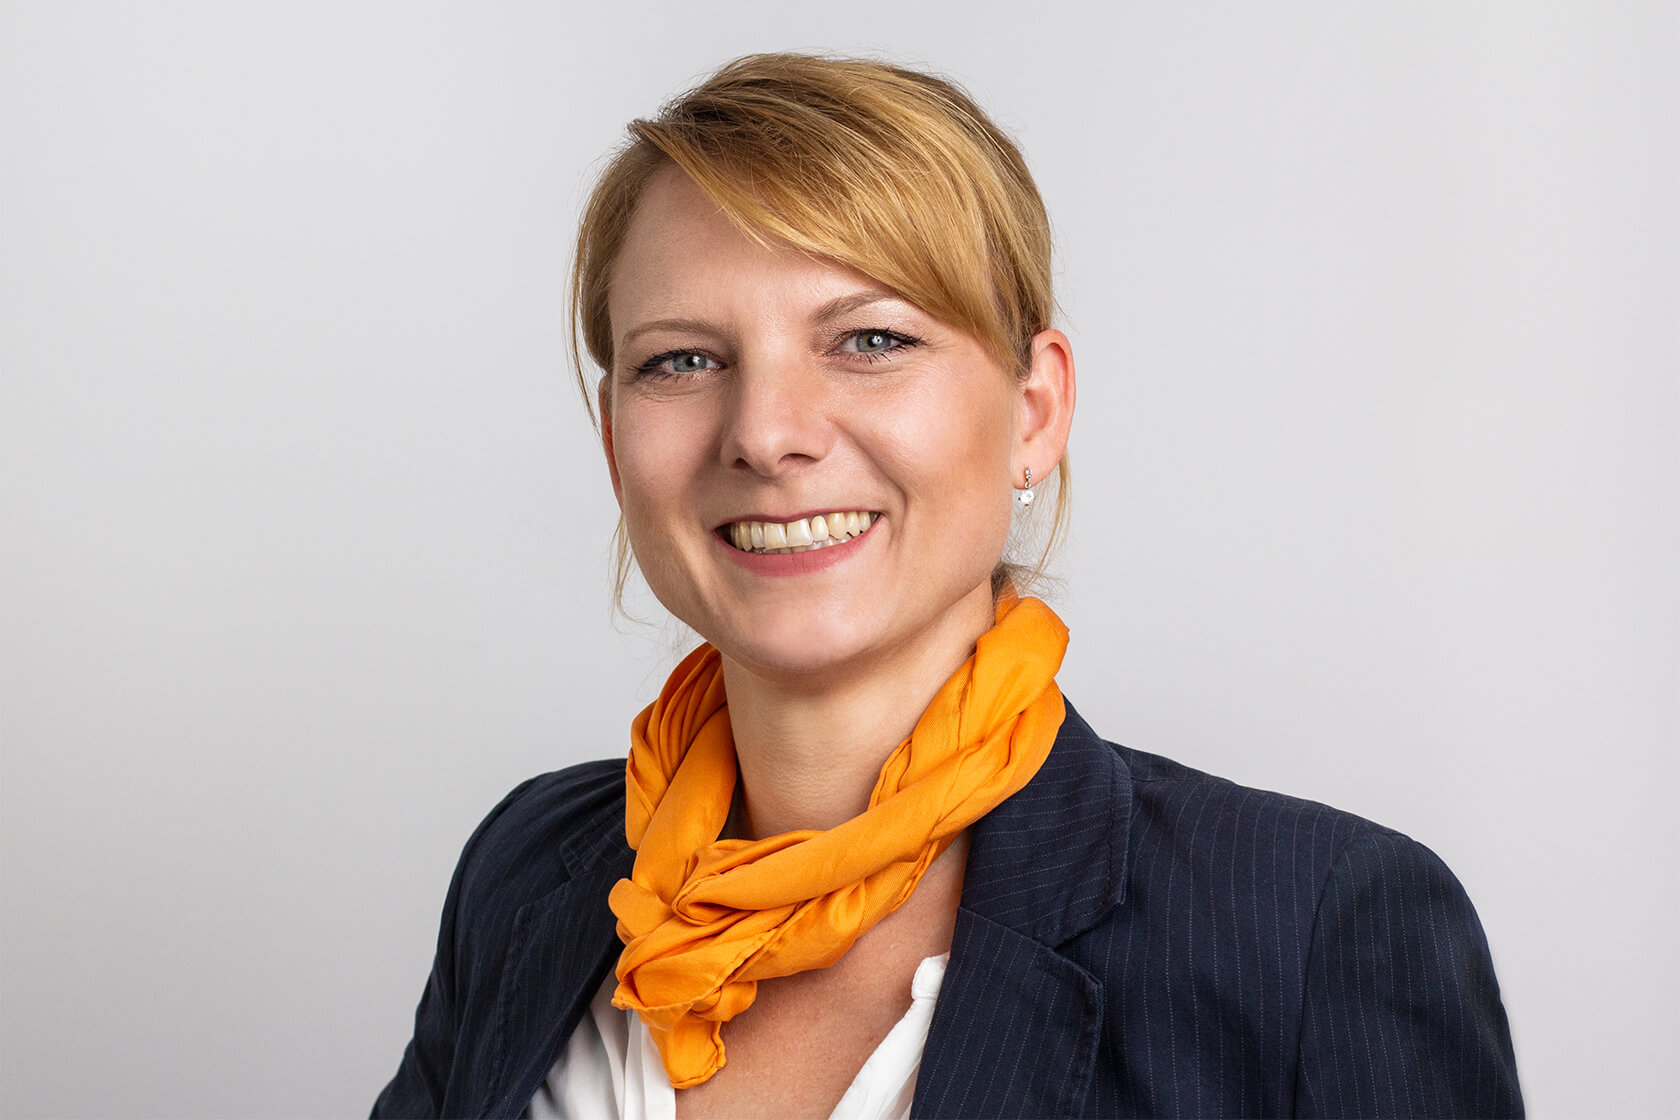 Sandra Hilz - Staatlich geprüfte Augenoptikerin/M.A. Germanistik/Marketing im Gesundheitswesen